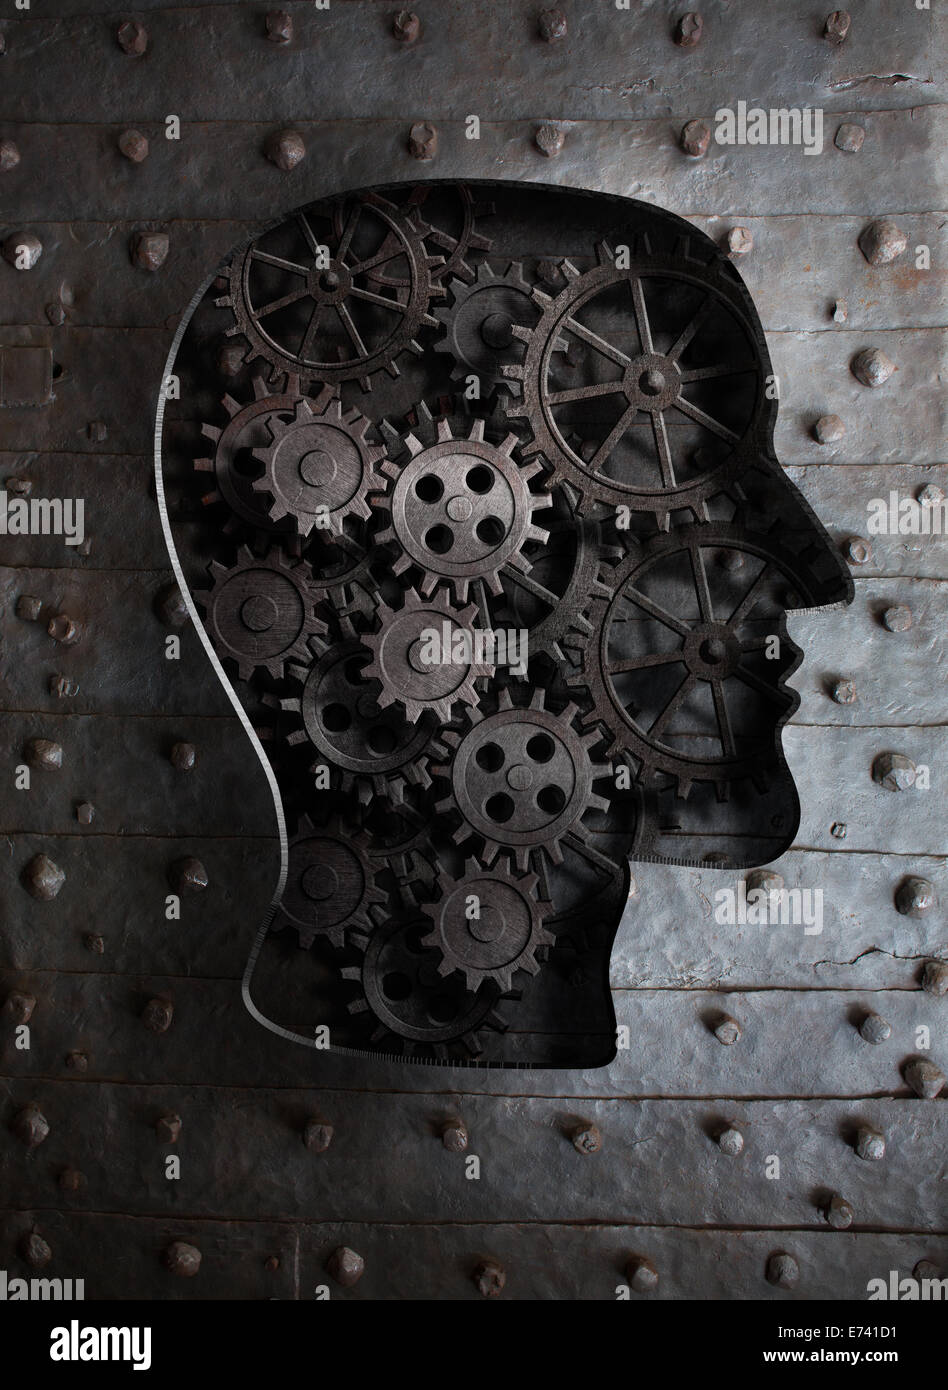 Gehirn-Konzept: Metall-Getriebe und Zahnräder in menschlicher Kopf Stockfoto